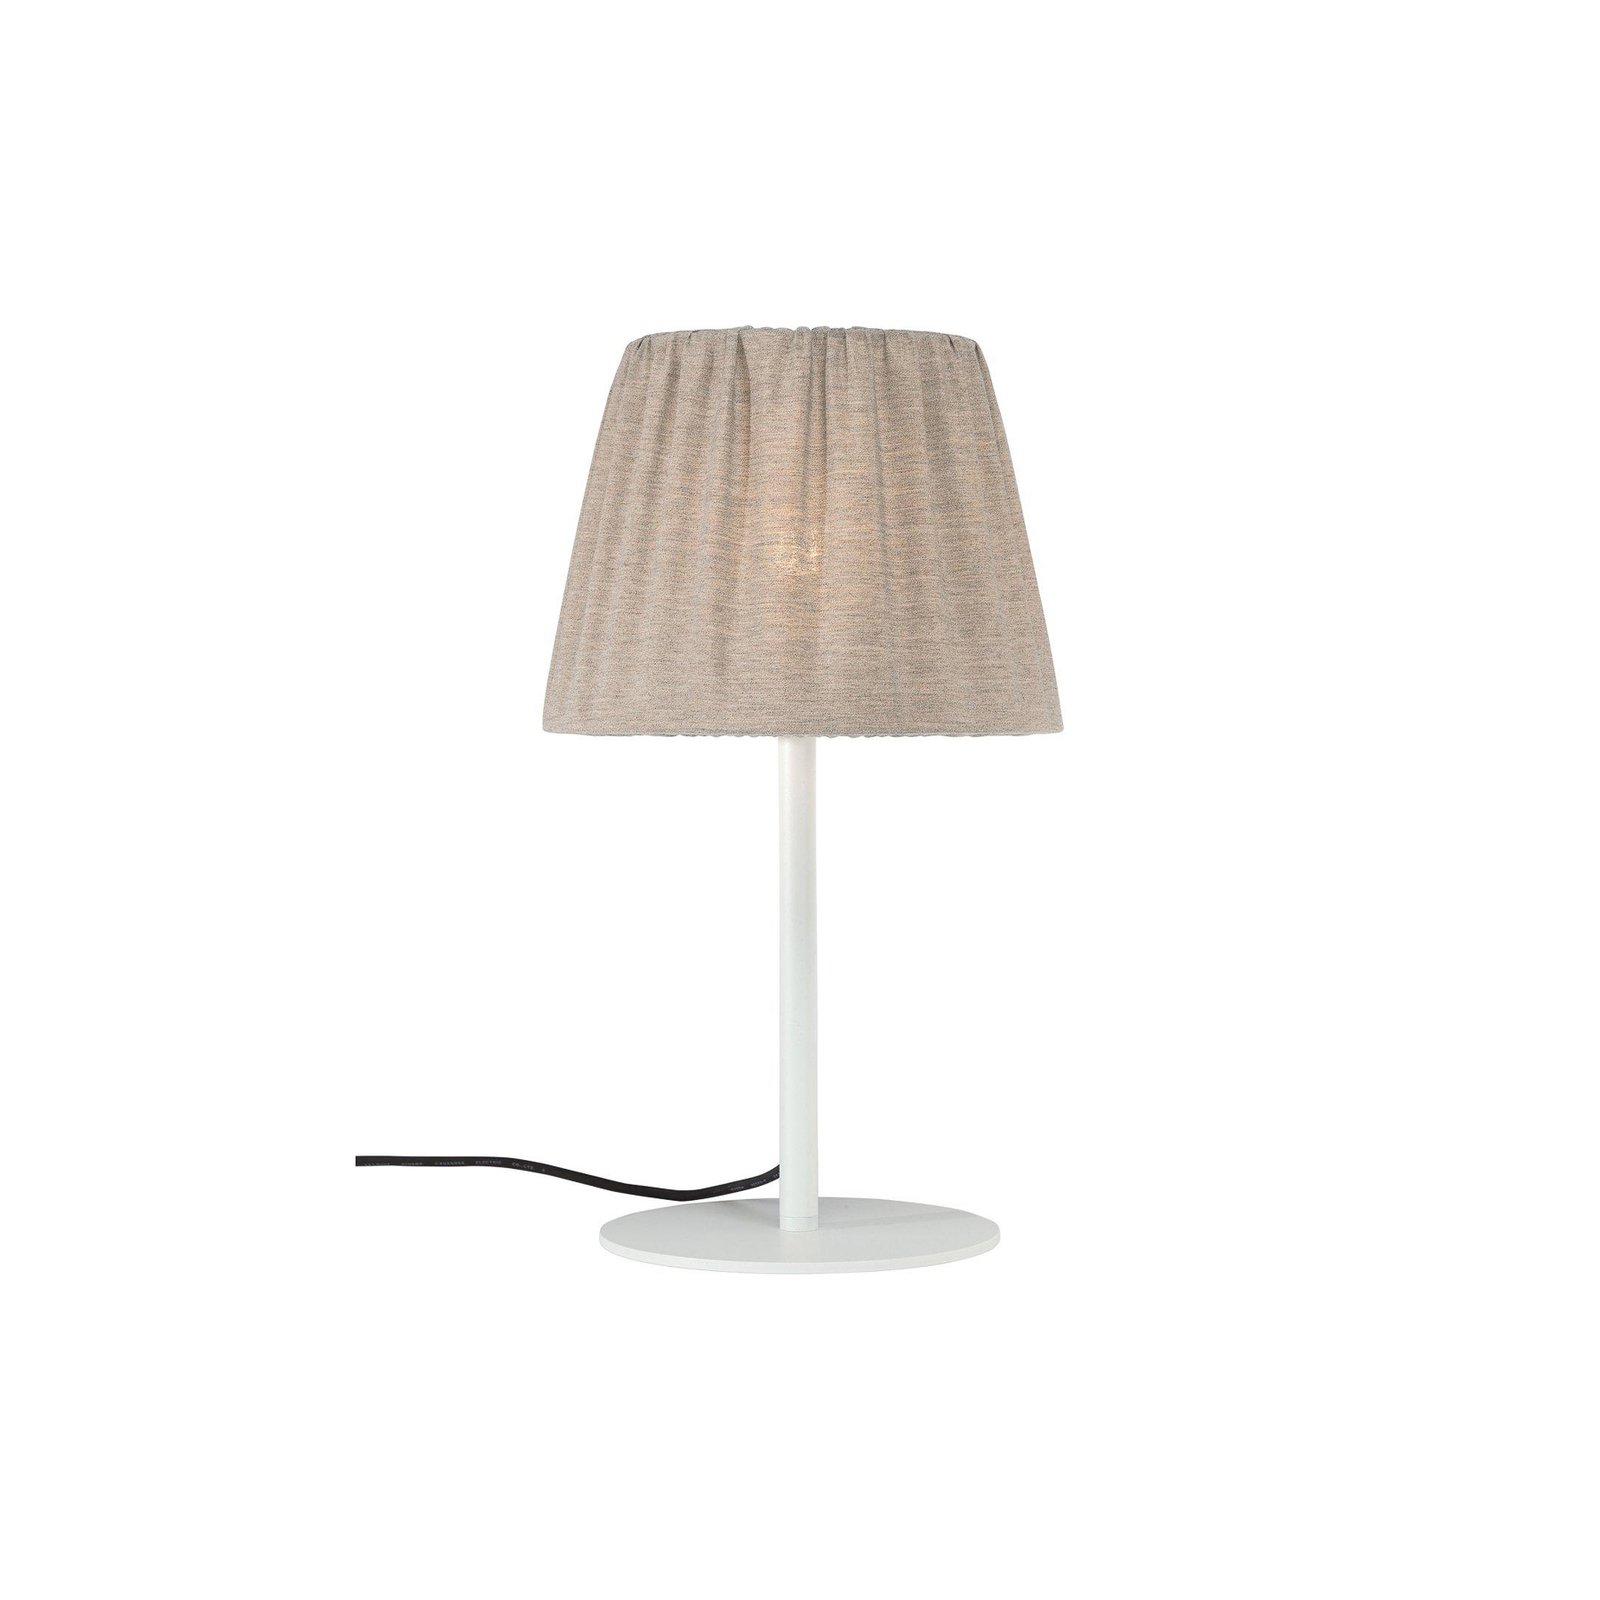 PR Home zewnętrzna lampa stołowa Agnar, biały/brązowy, 57 cm